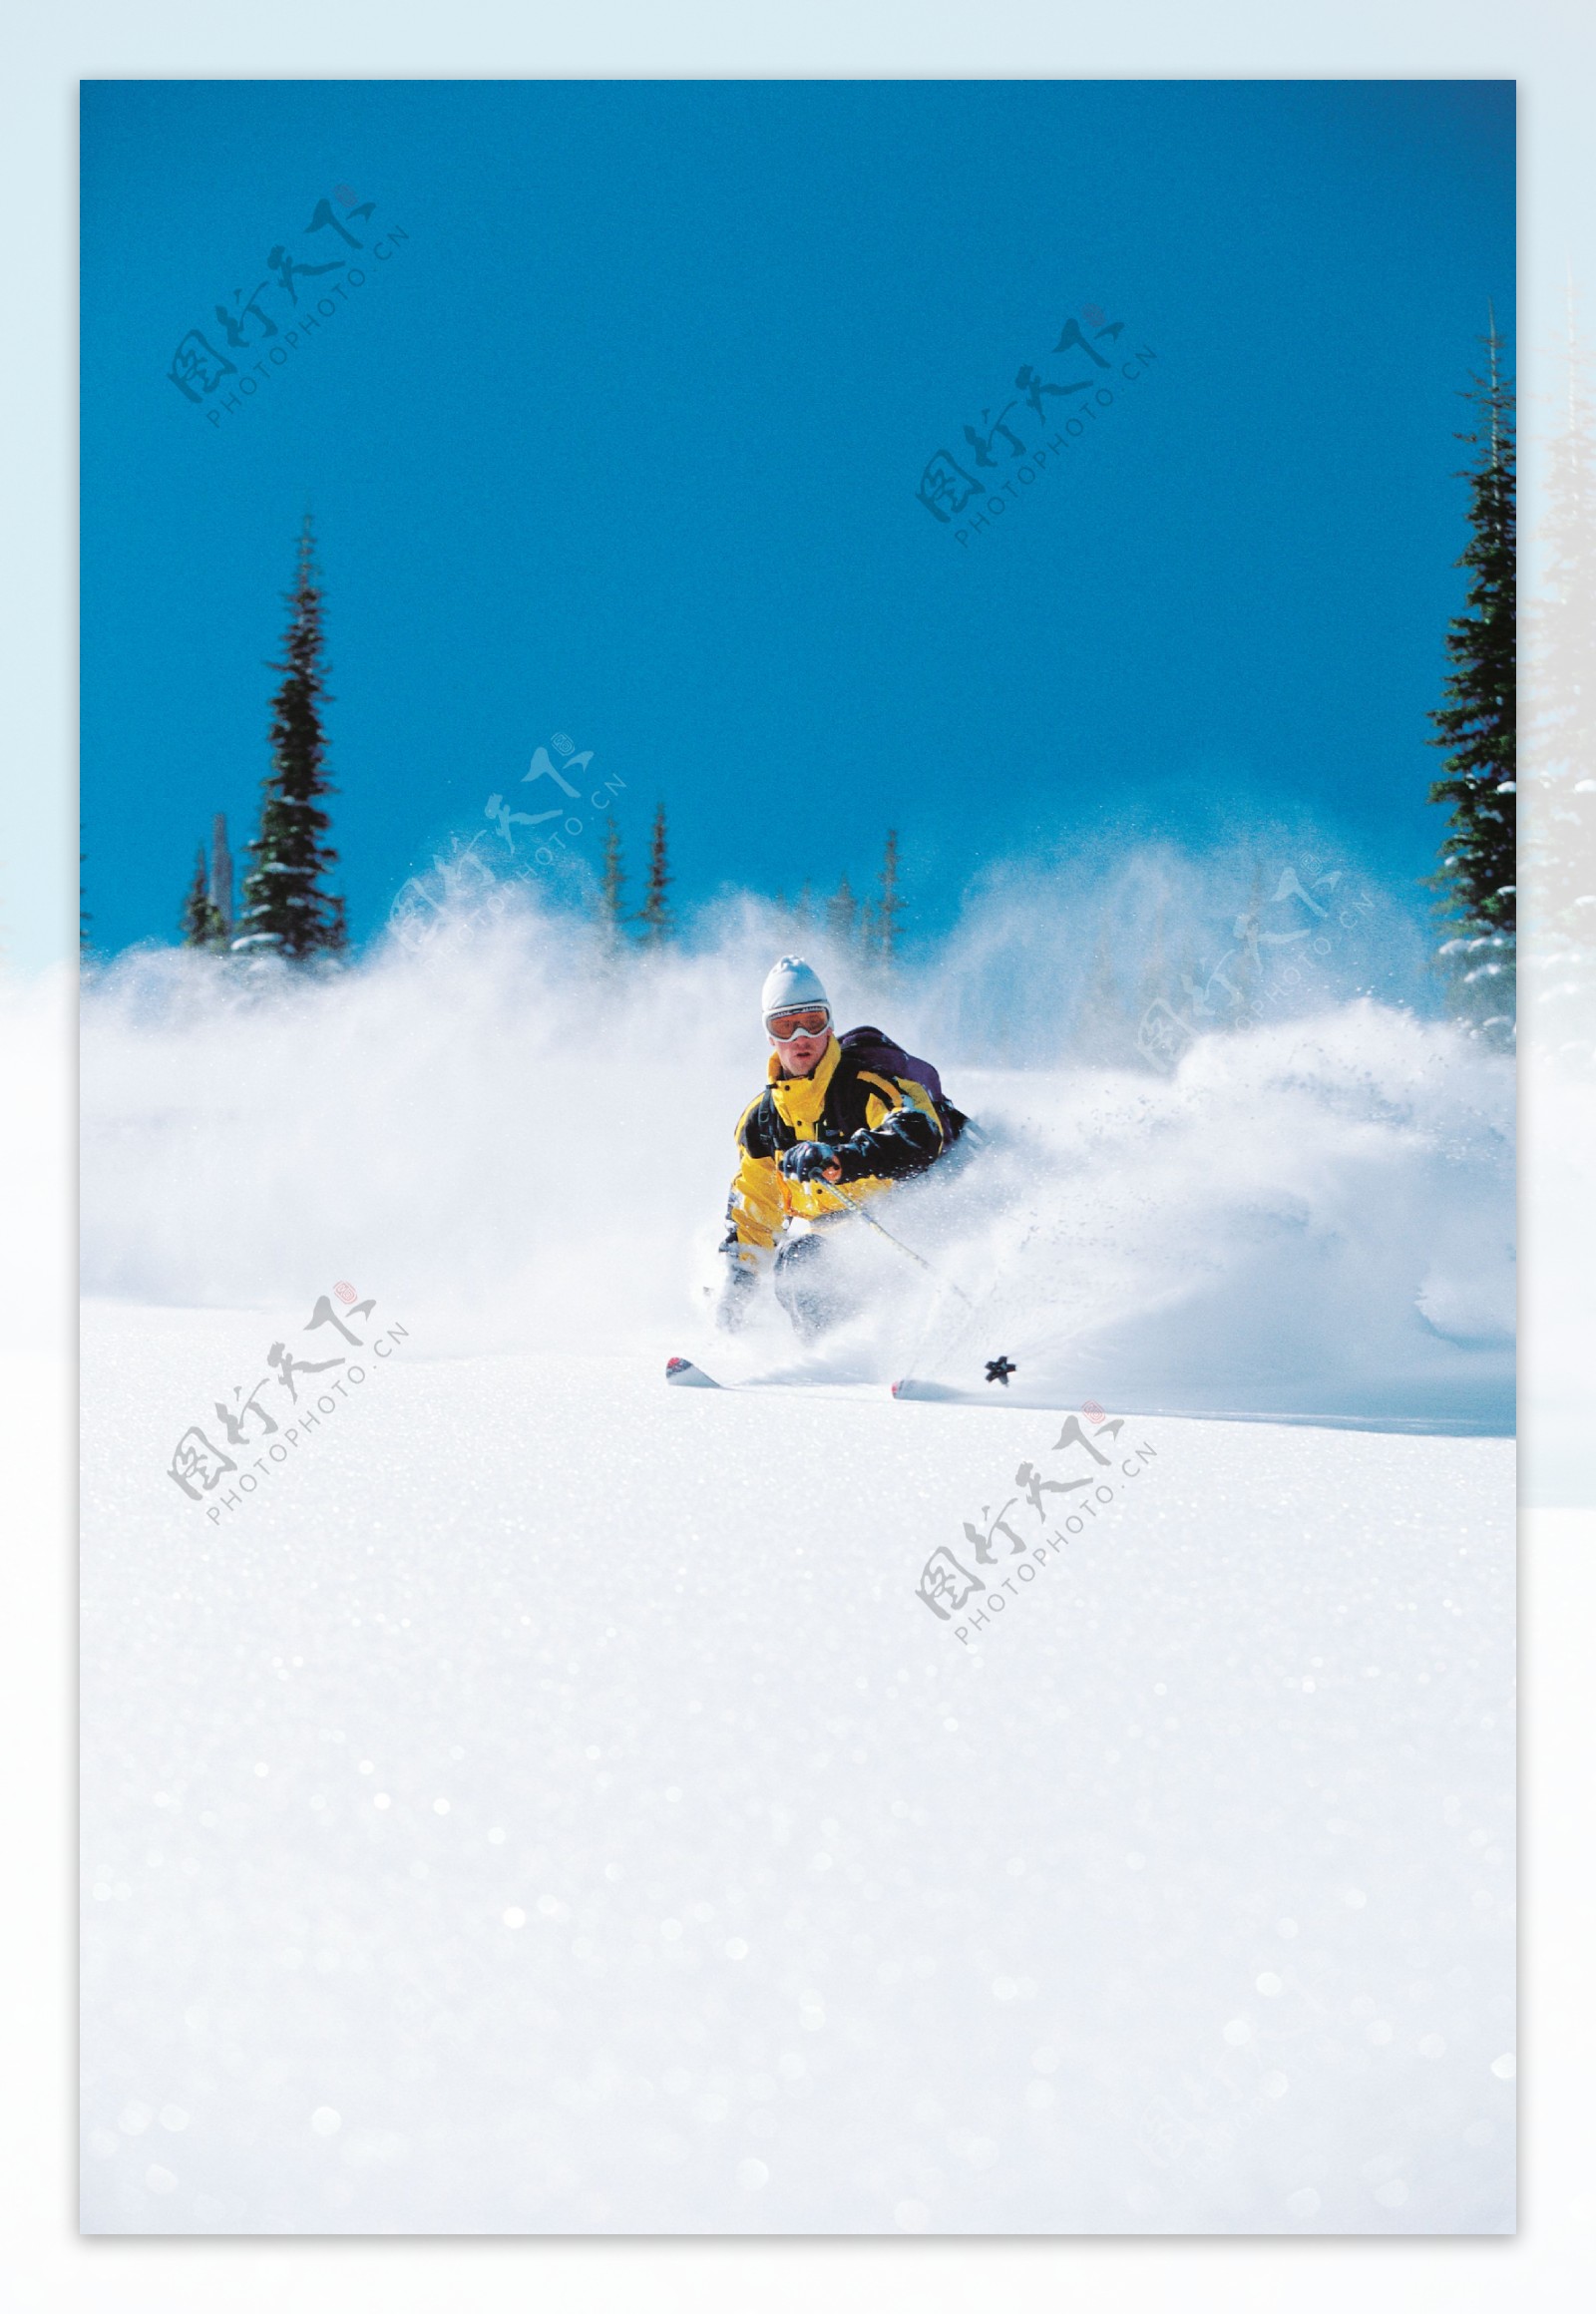 滑雪运动员摄影高清图片